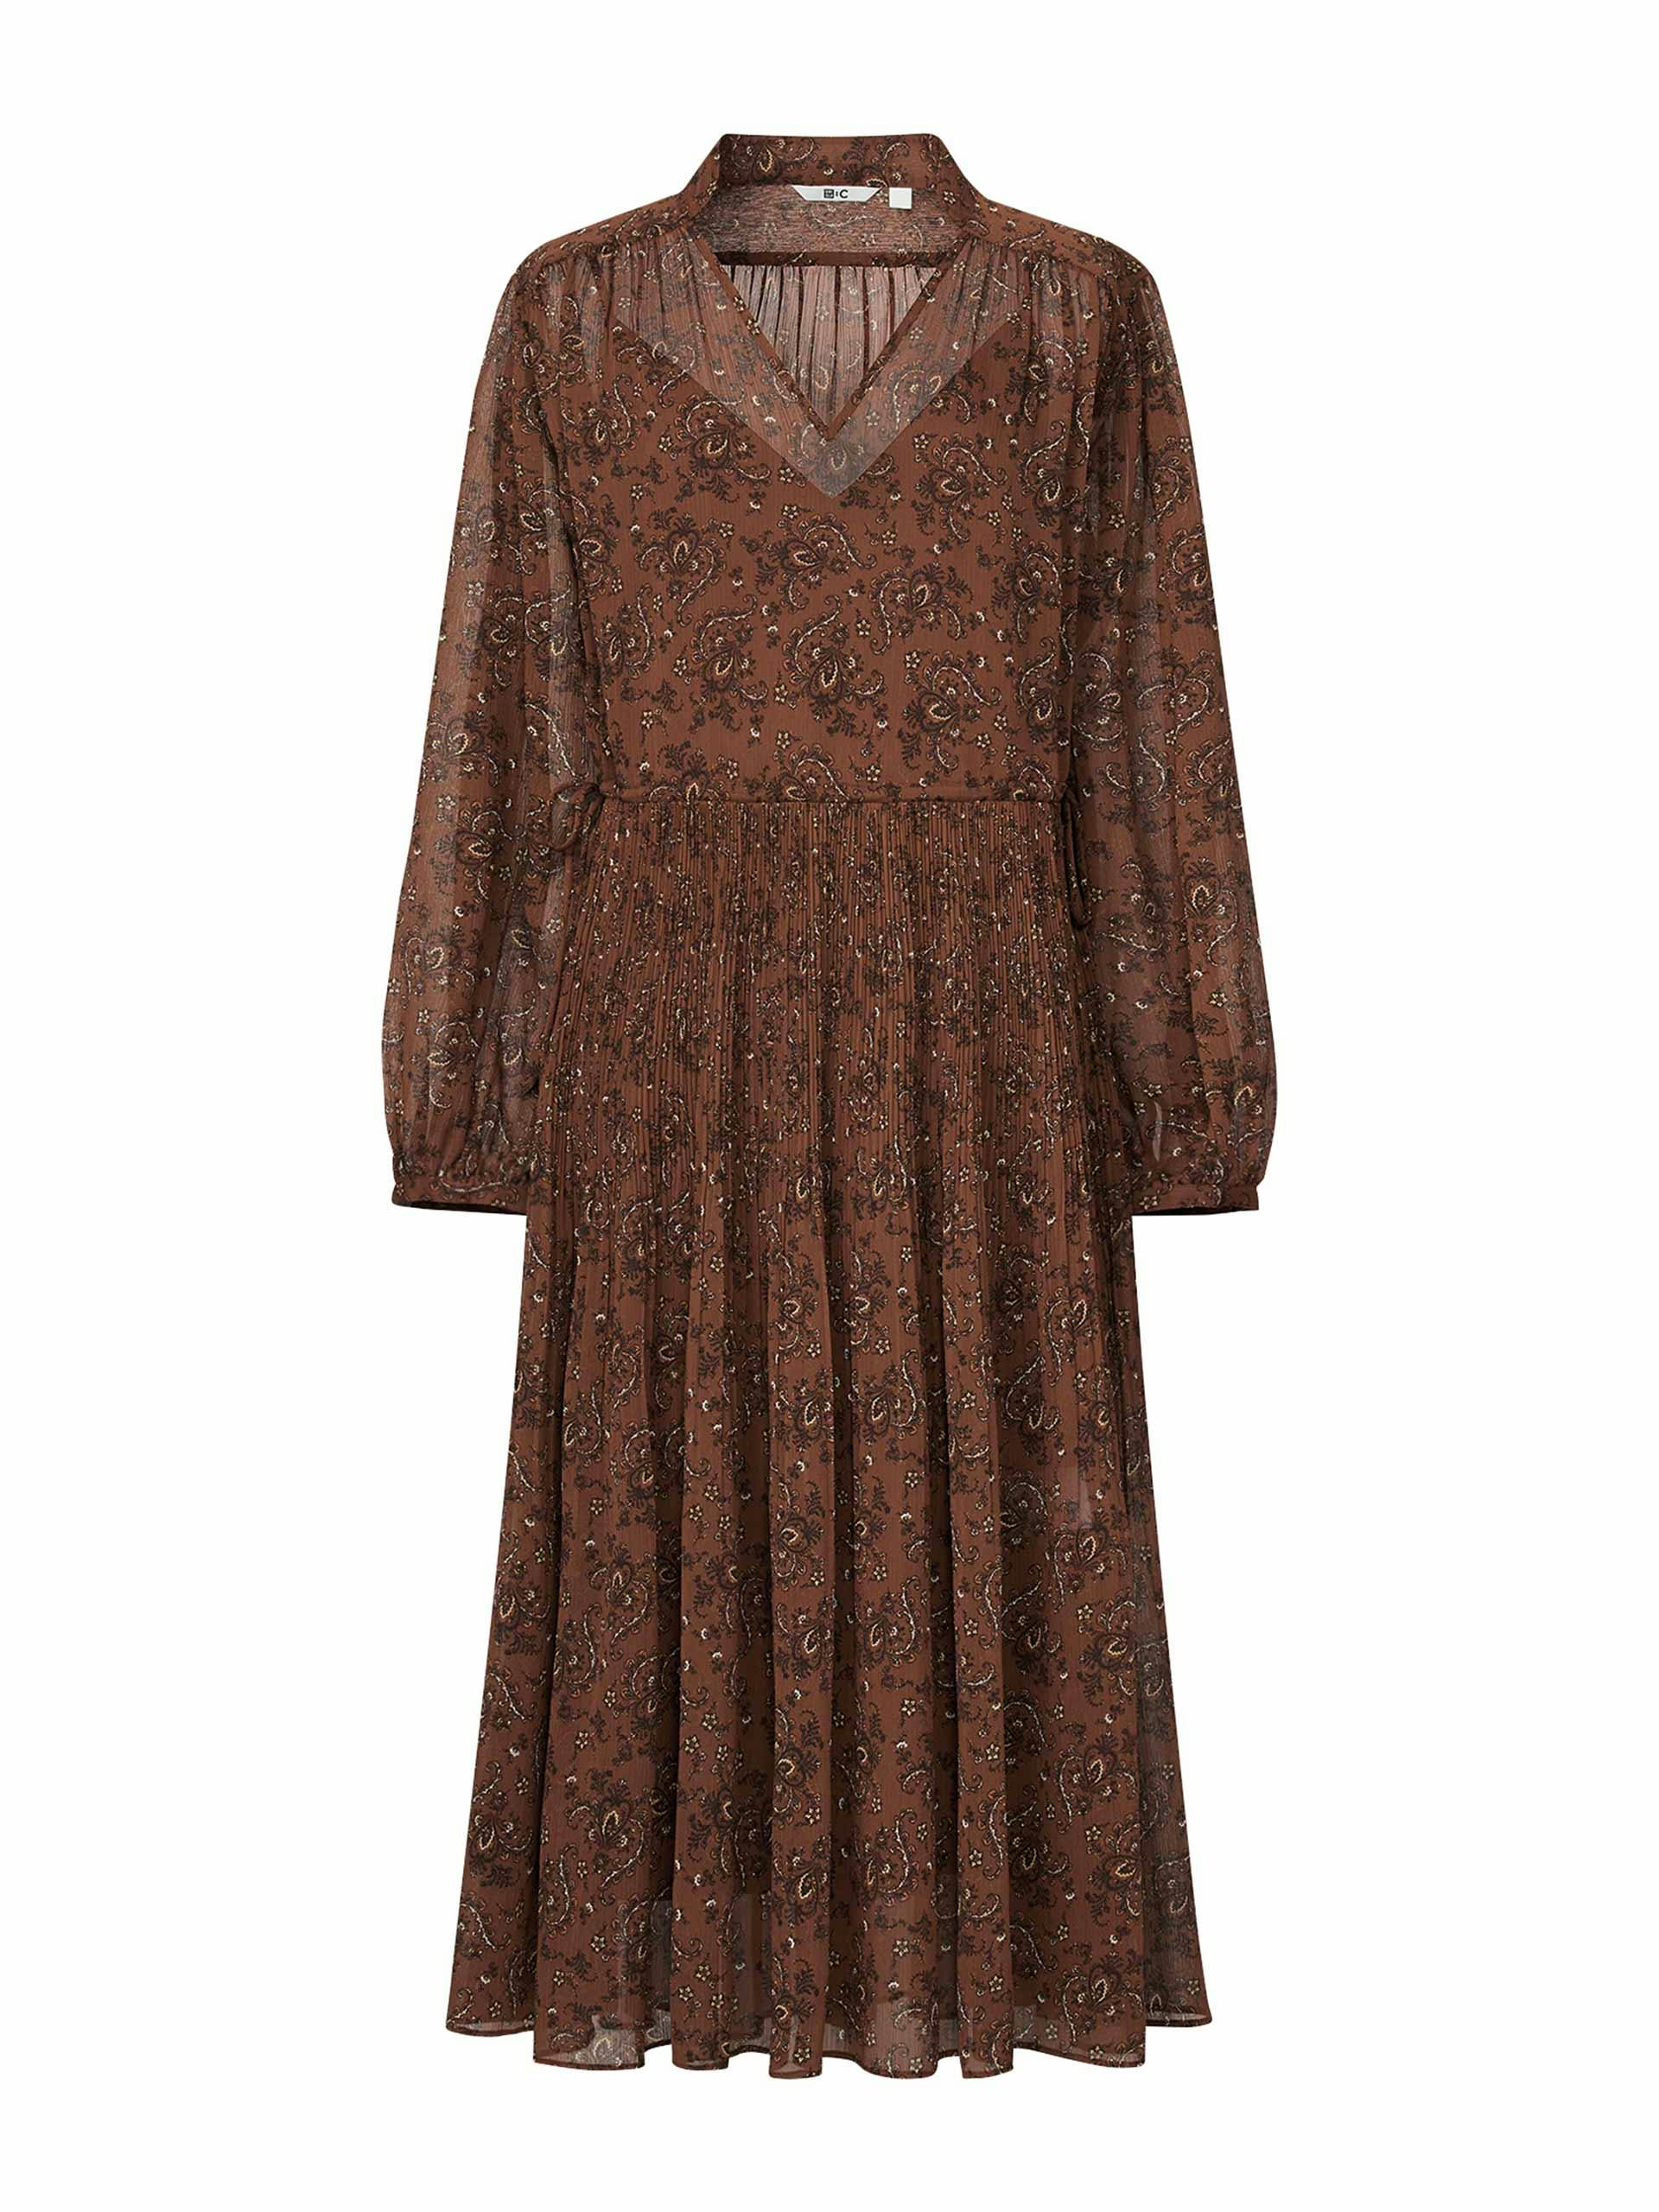 Brown pleated printed long sleeved dress